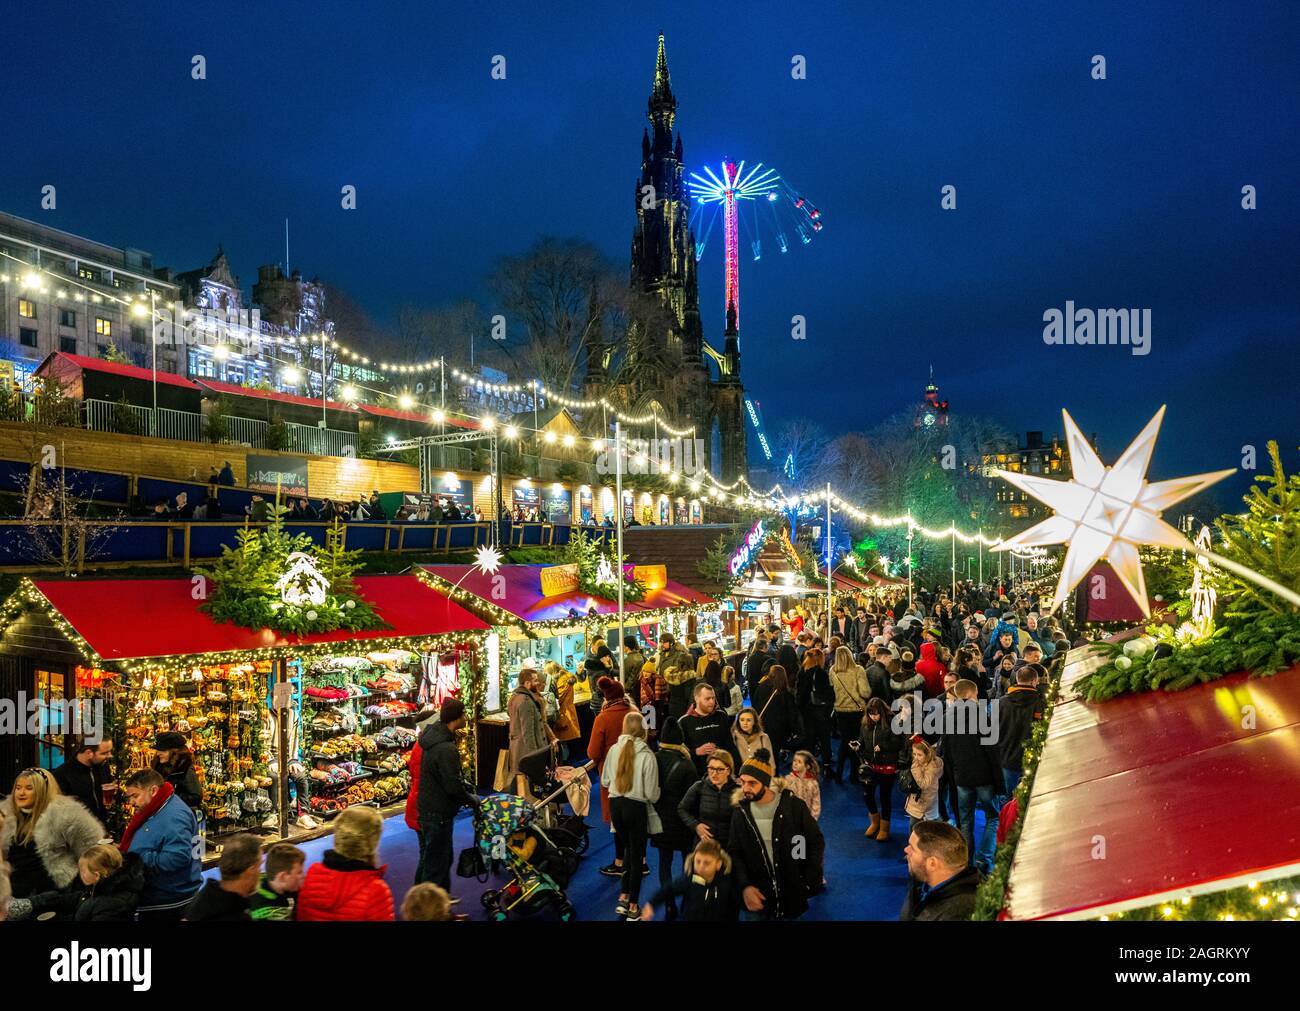 Massen von Menschen in den Beschäftigten Edinburgh Weihnachtsmarkt in West Princes Street Gardens in Edinburgh, Schottland, Großbritannien Stockfoto